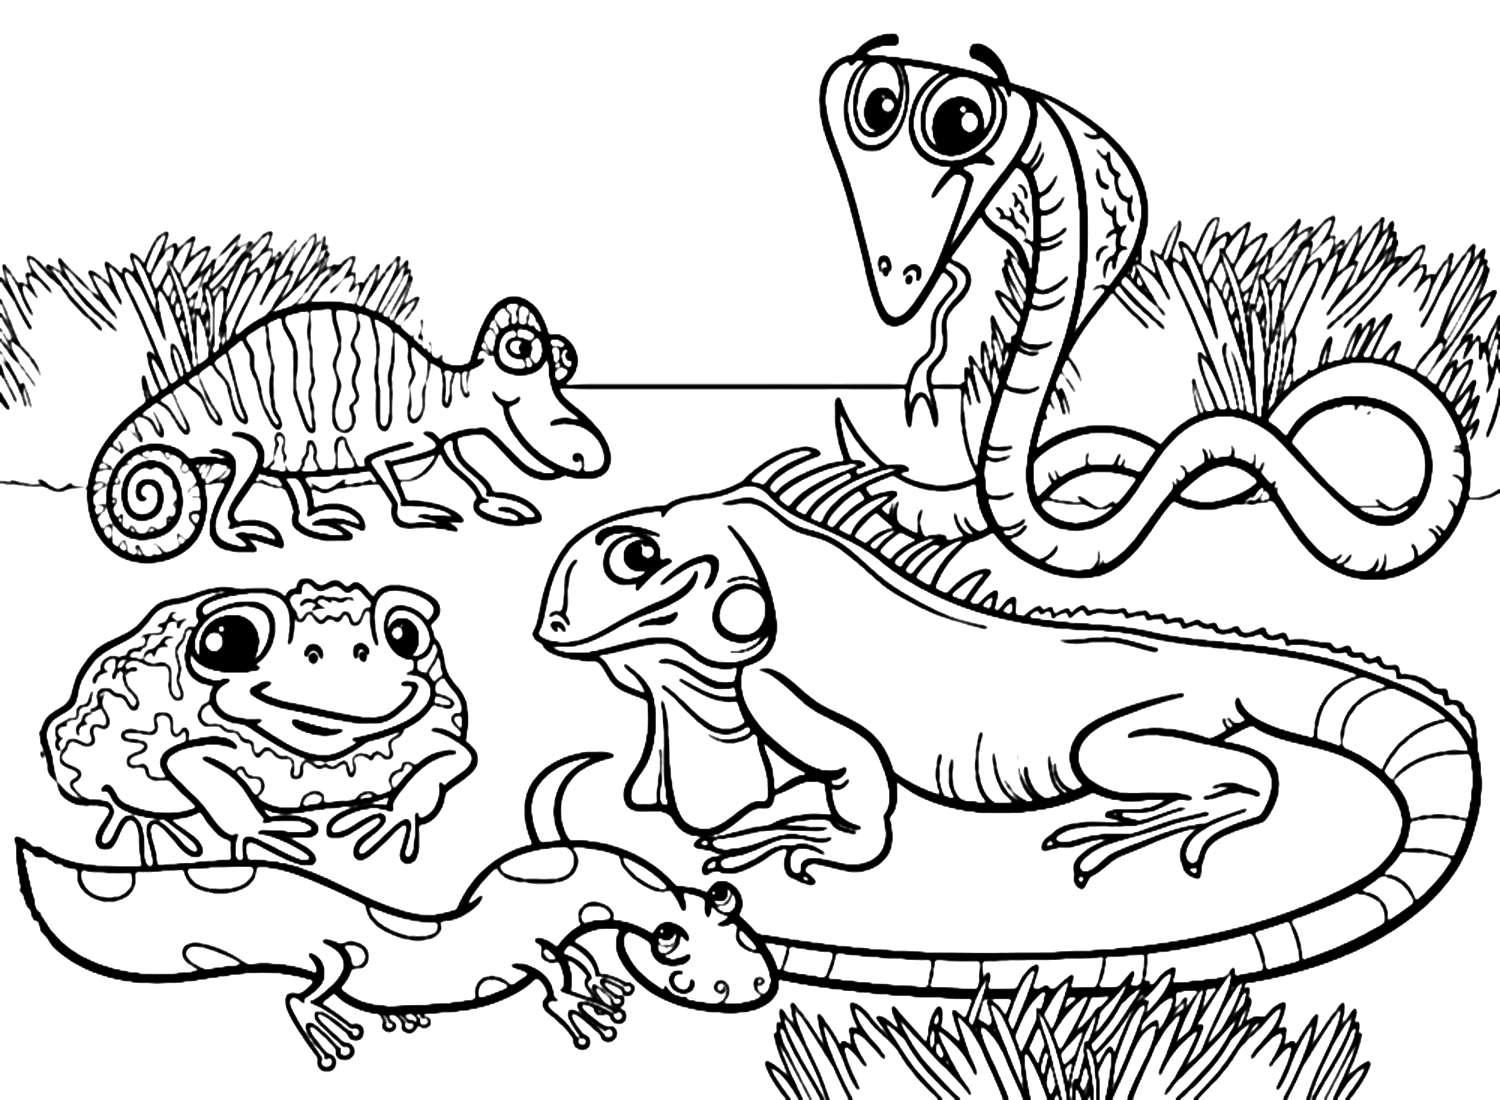 Malvorlage „Aga-Kröte und Amphibien“ von Cane Toad